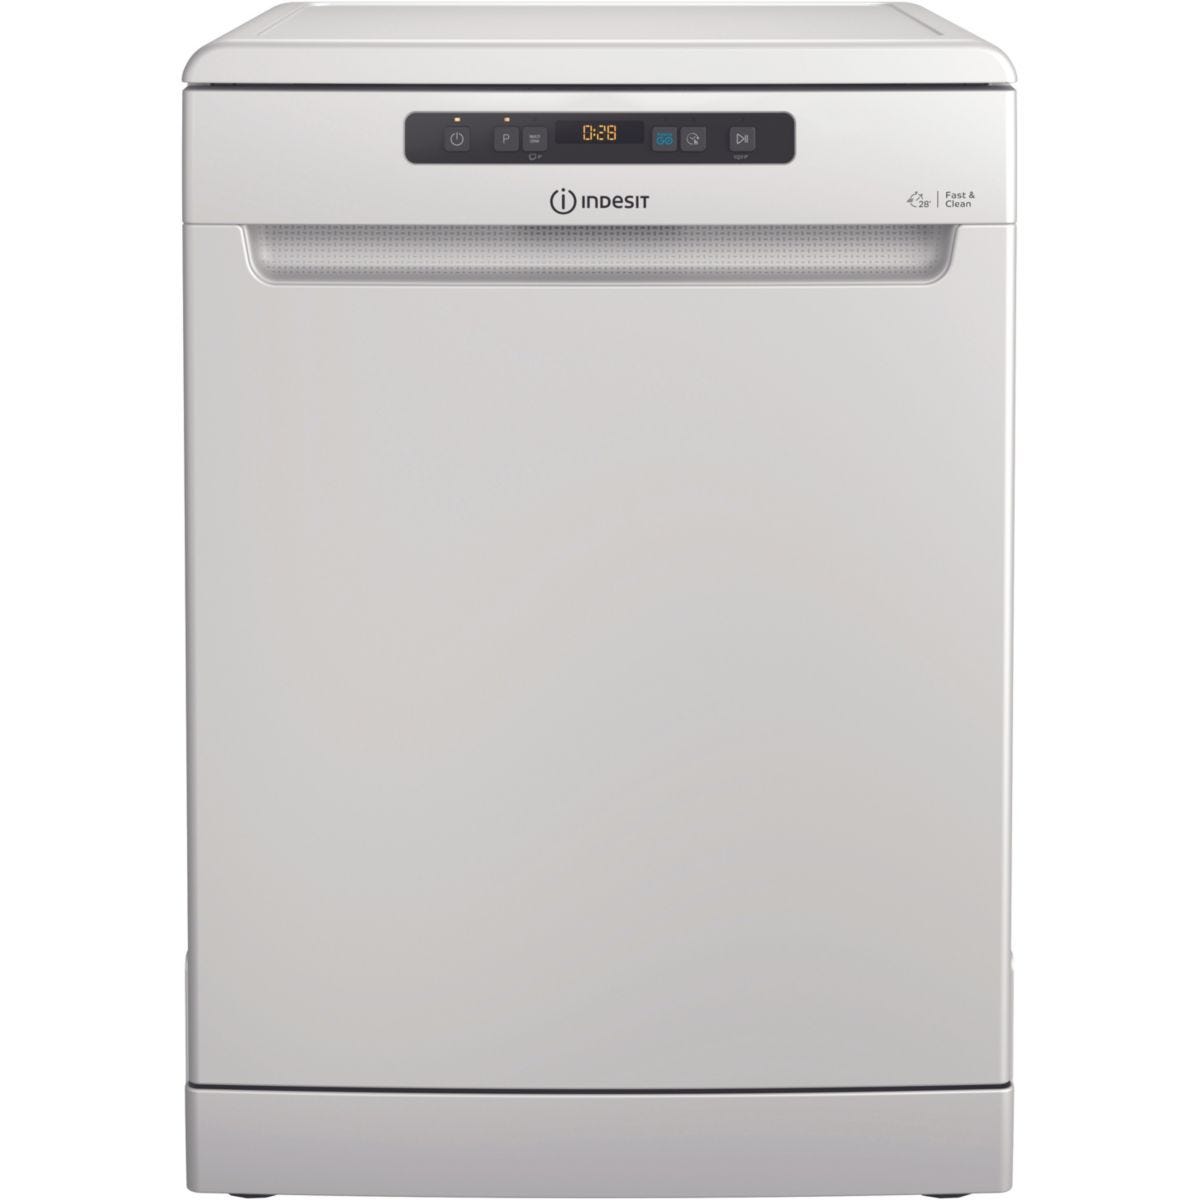 Máquina de lavar louça Edesa 45 EDW-4610 WH